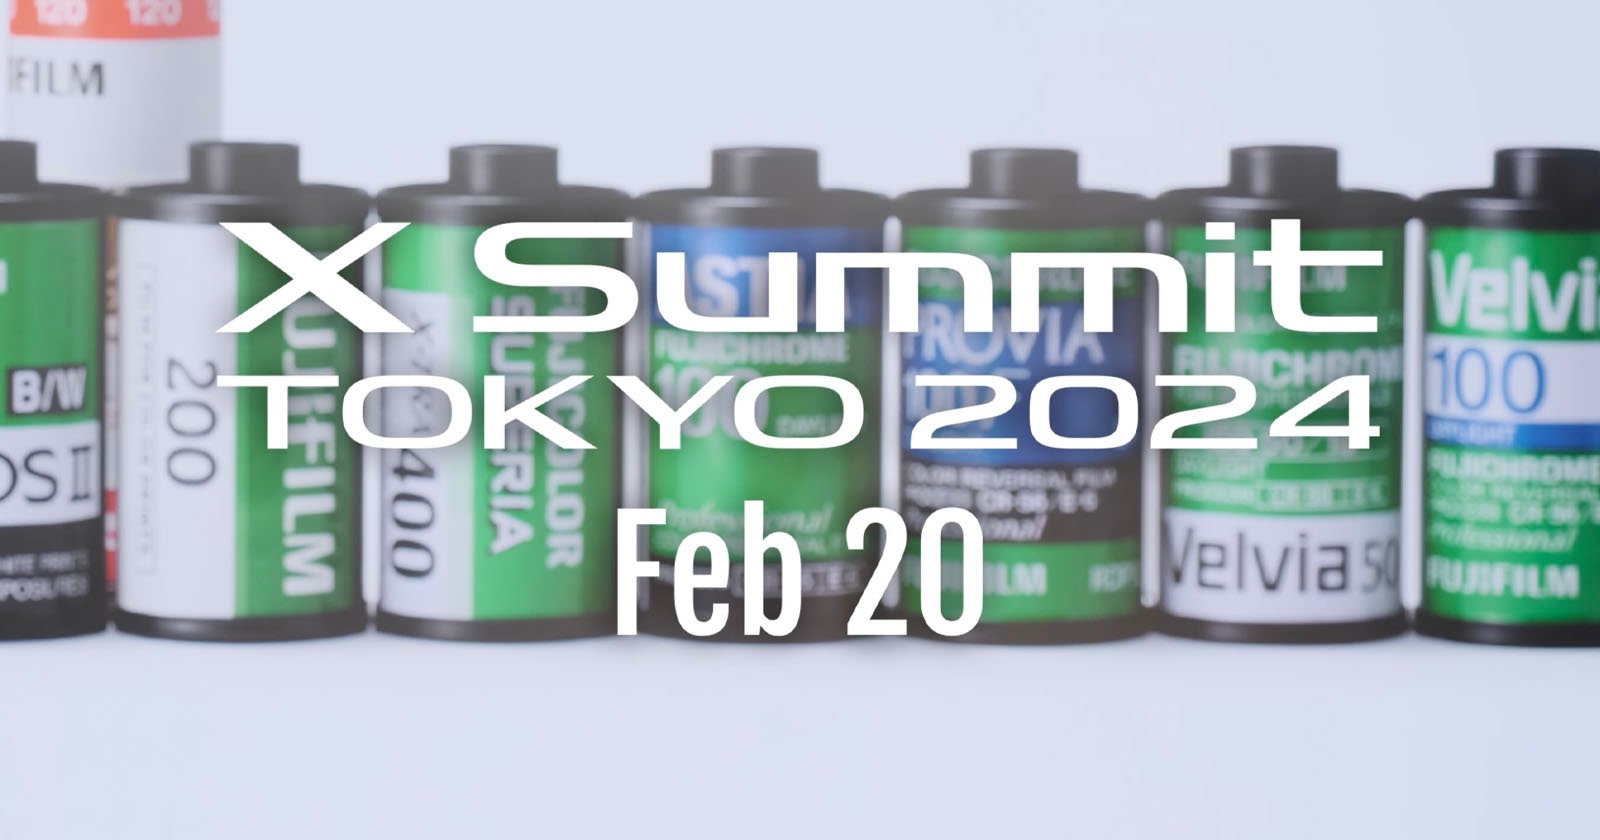  fujifilm next x-summit february just before japan big 